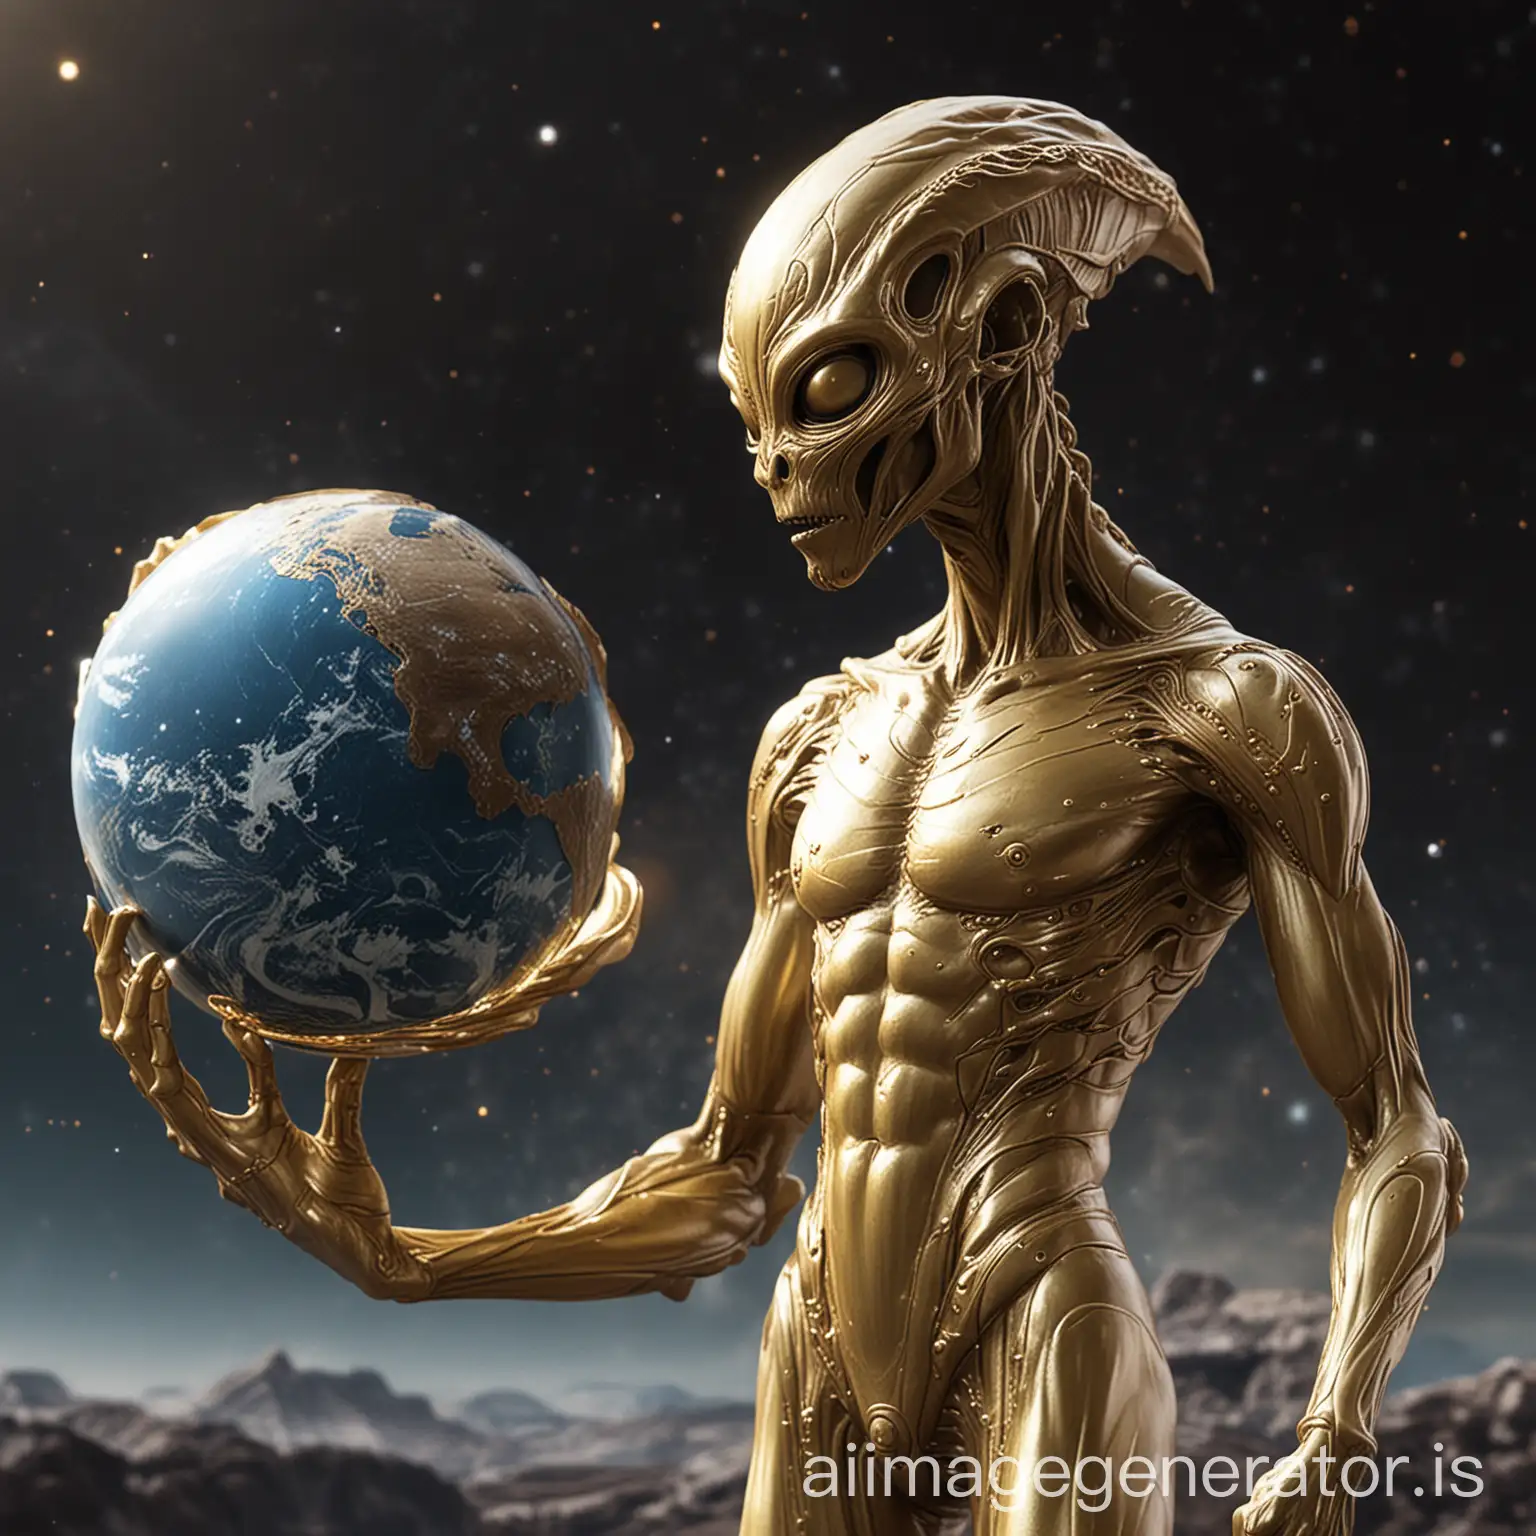 a golden statue of an alien holding a planet